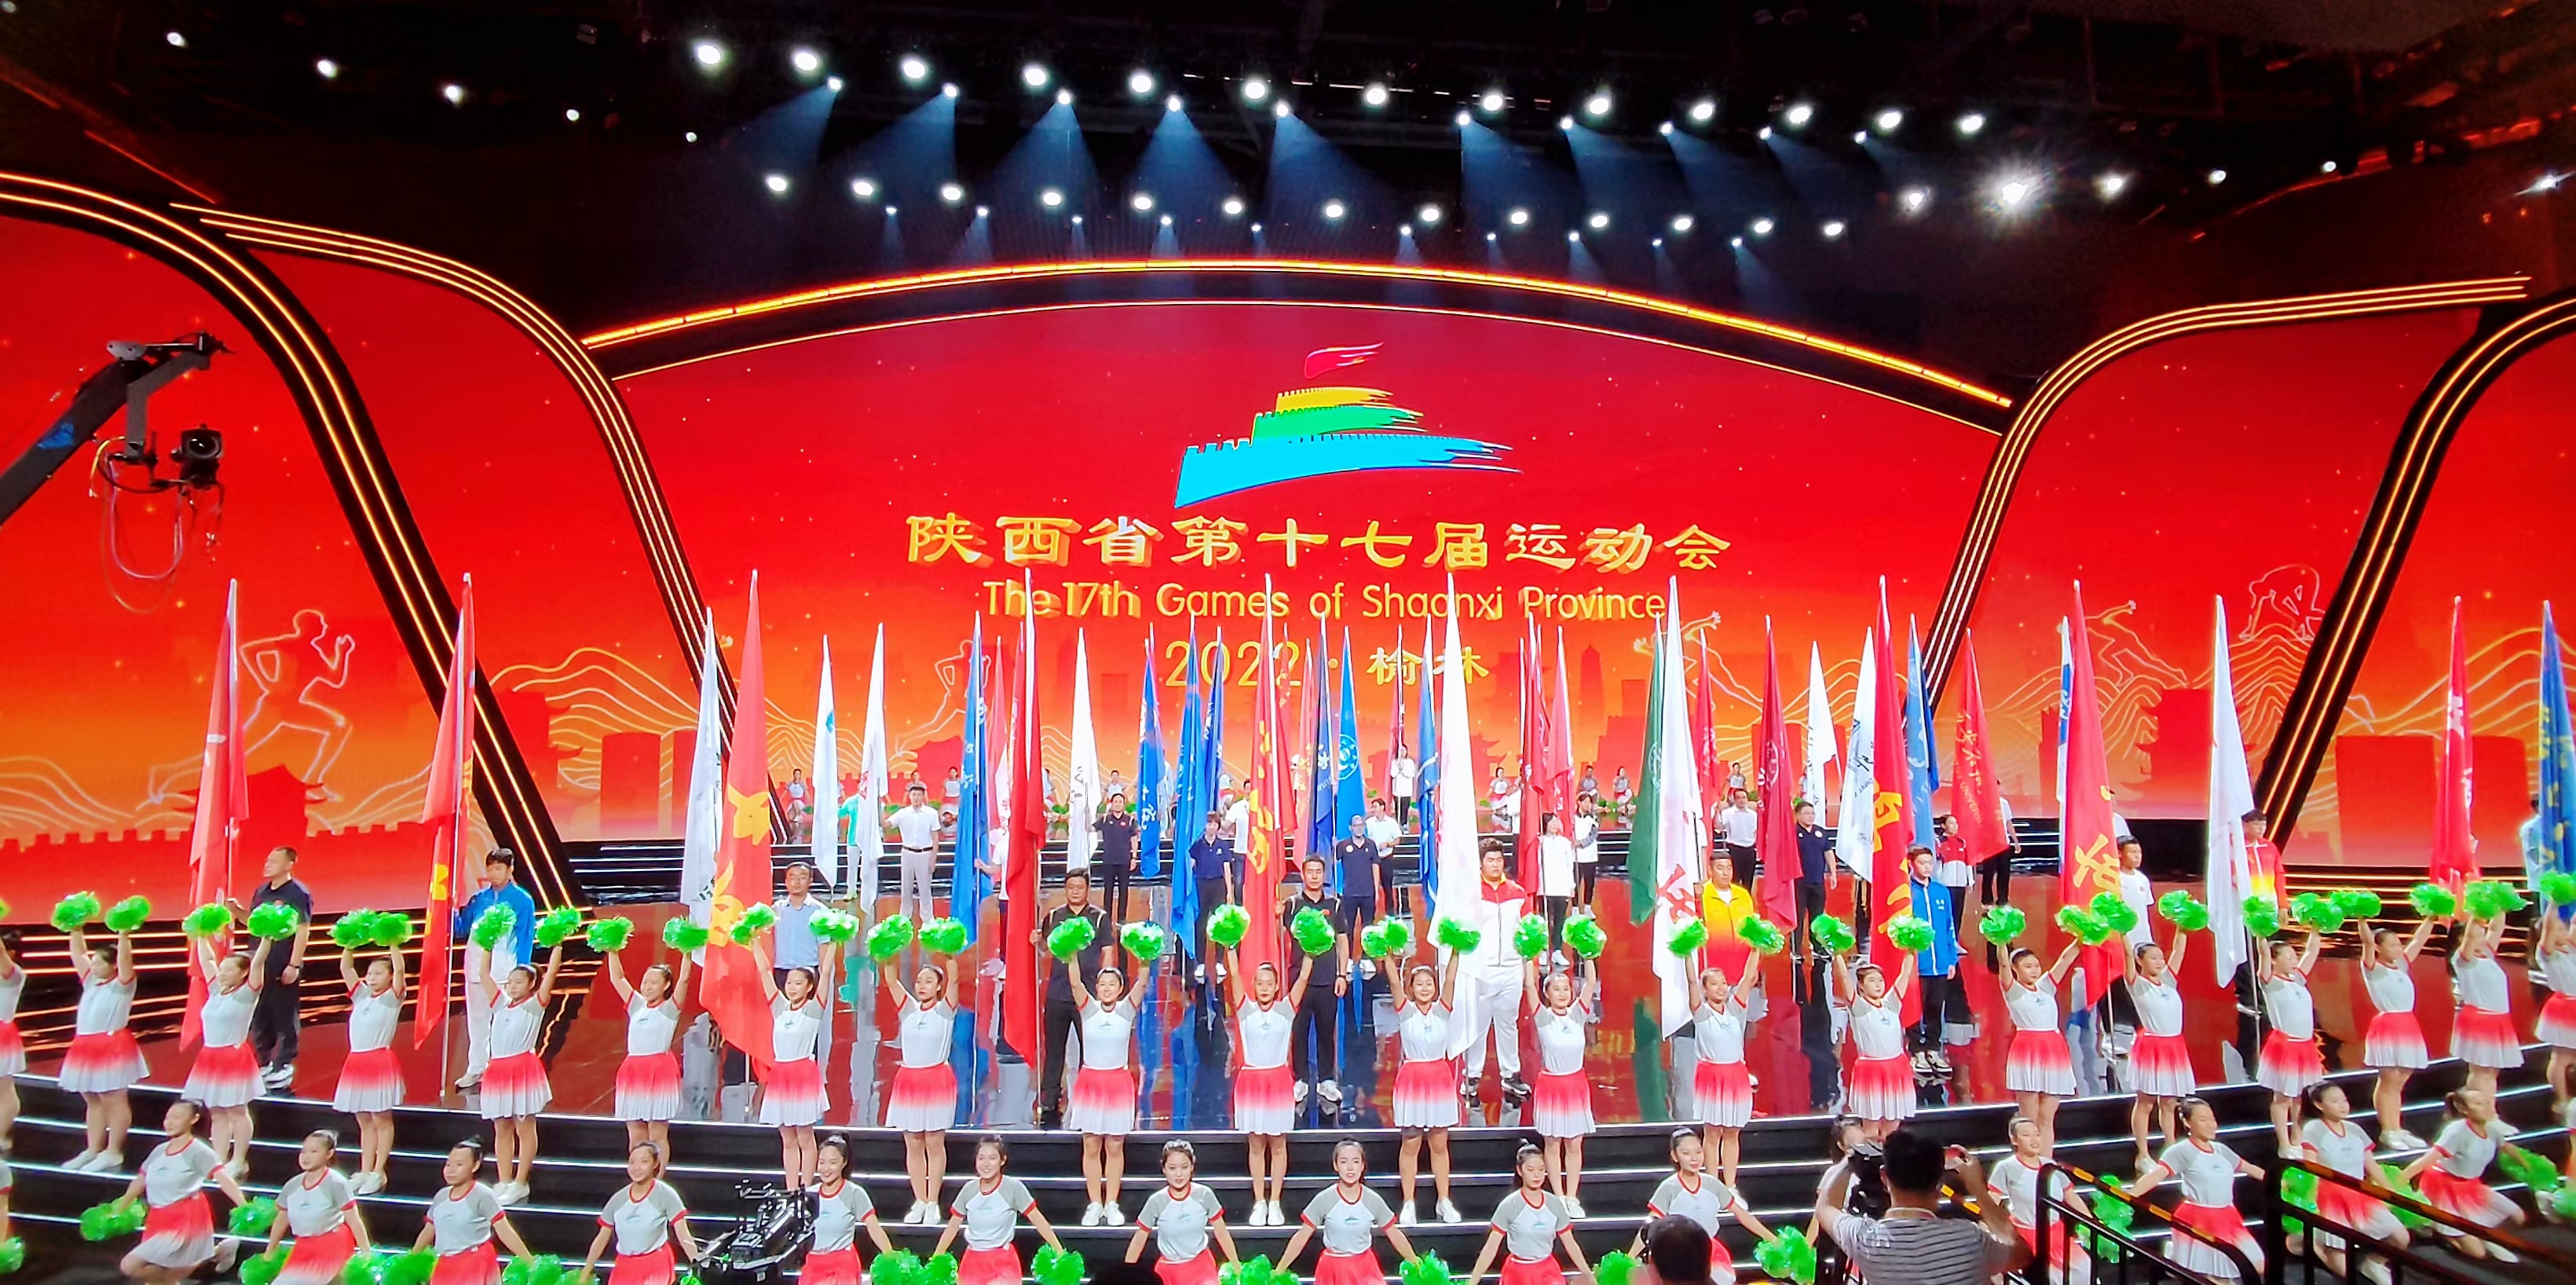 硕果累累 陕西省第十七届运动会在榆林胜利闭幕